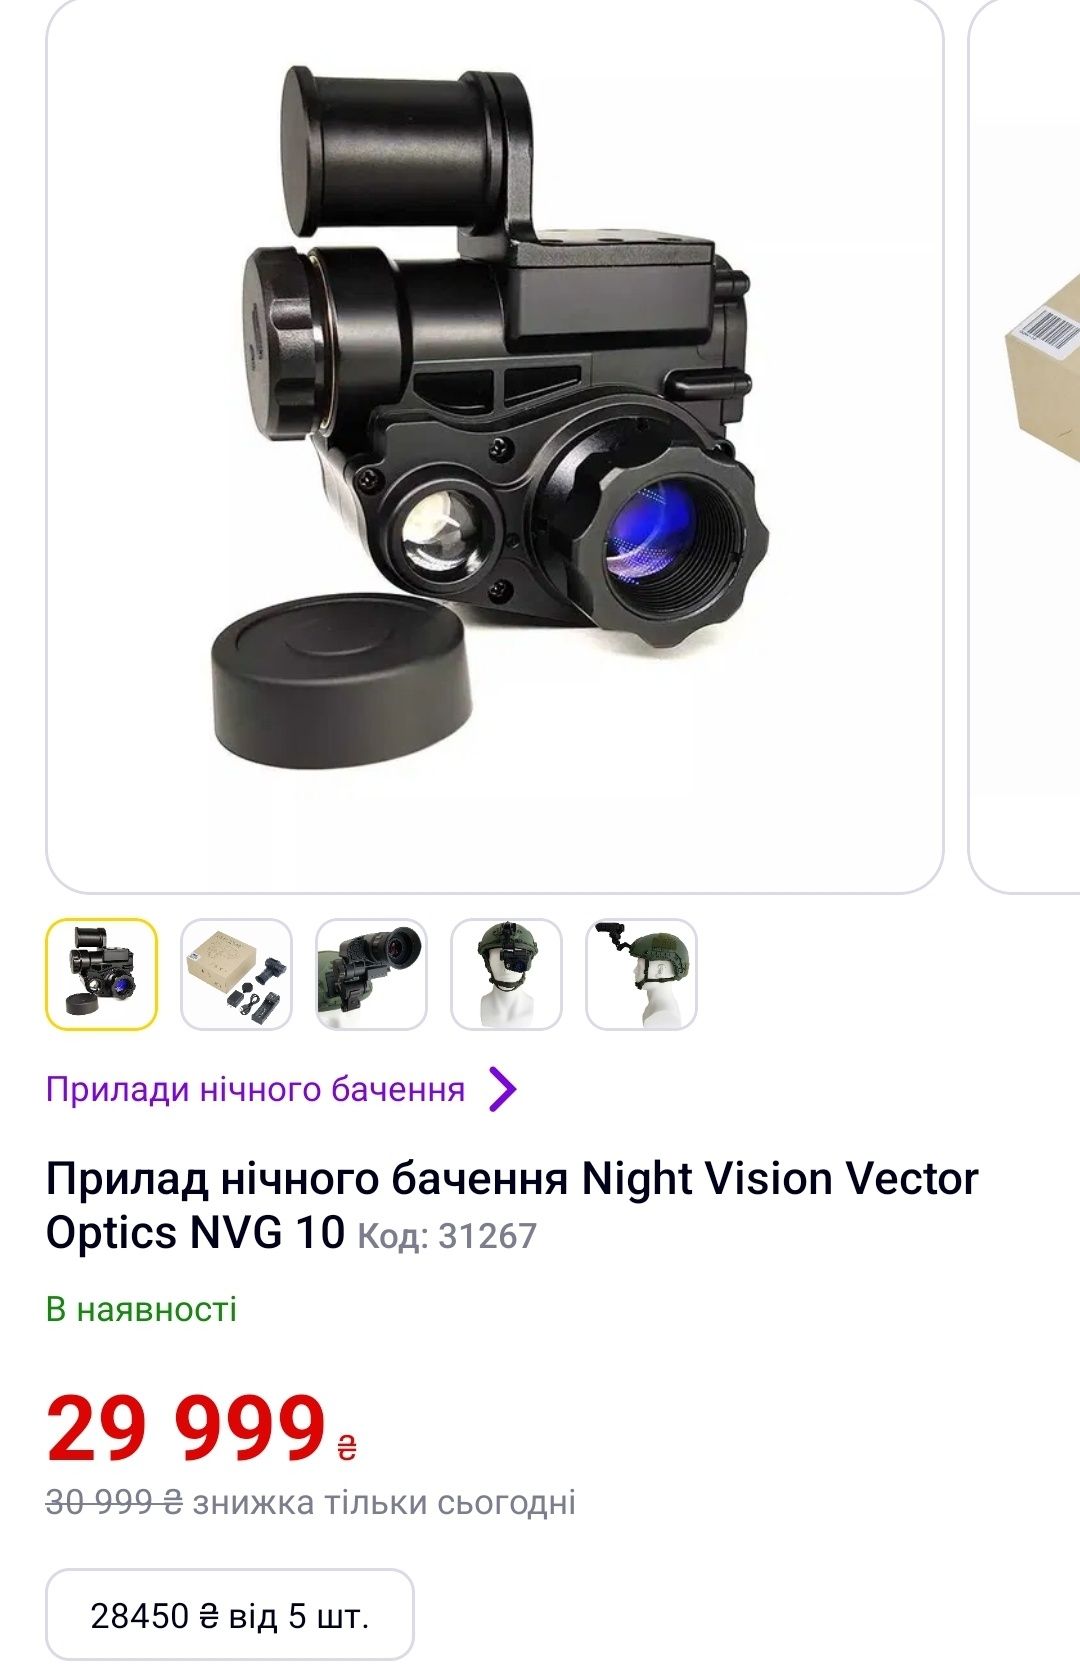 Прибор ночного видения Vector Optics NVG 10 Night Vision с креплением